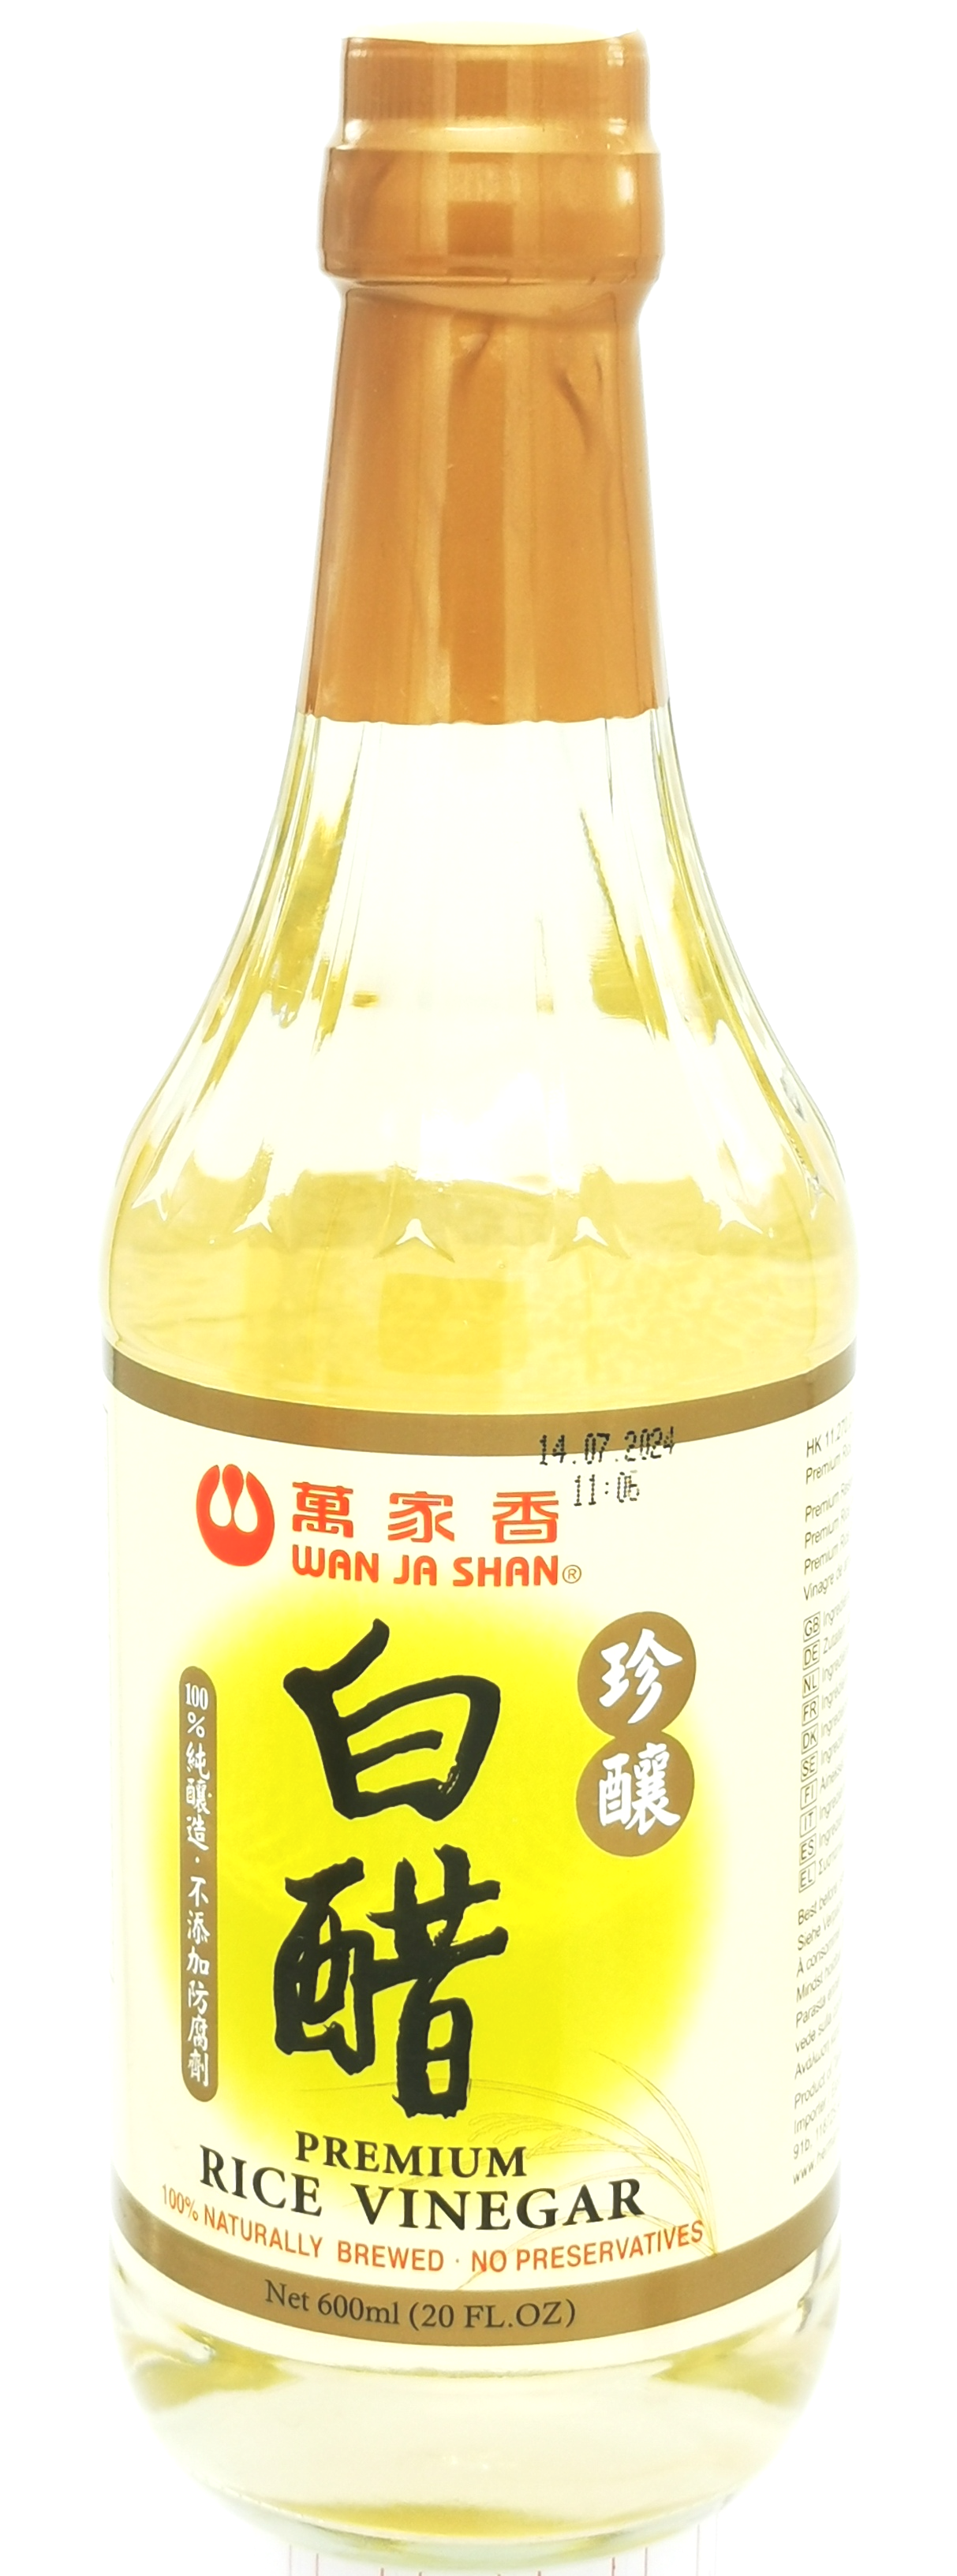 Wan Ja Shan Premium Rice Vinegar 600ml